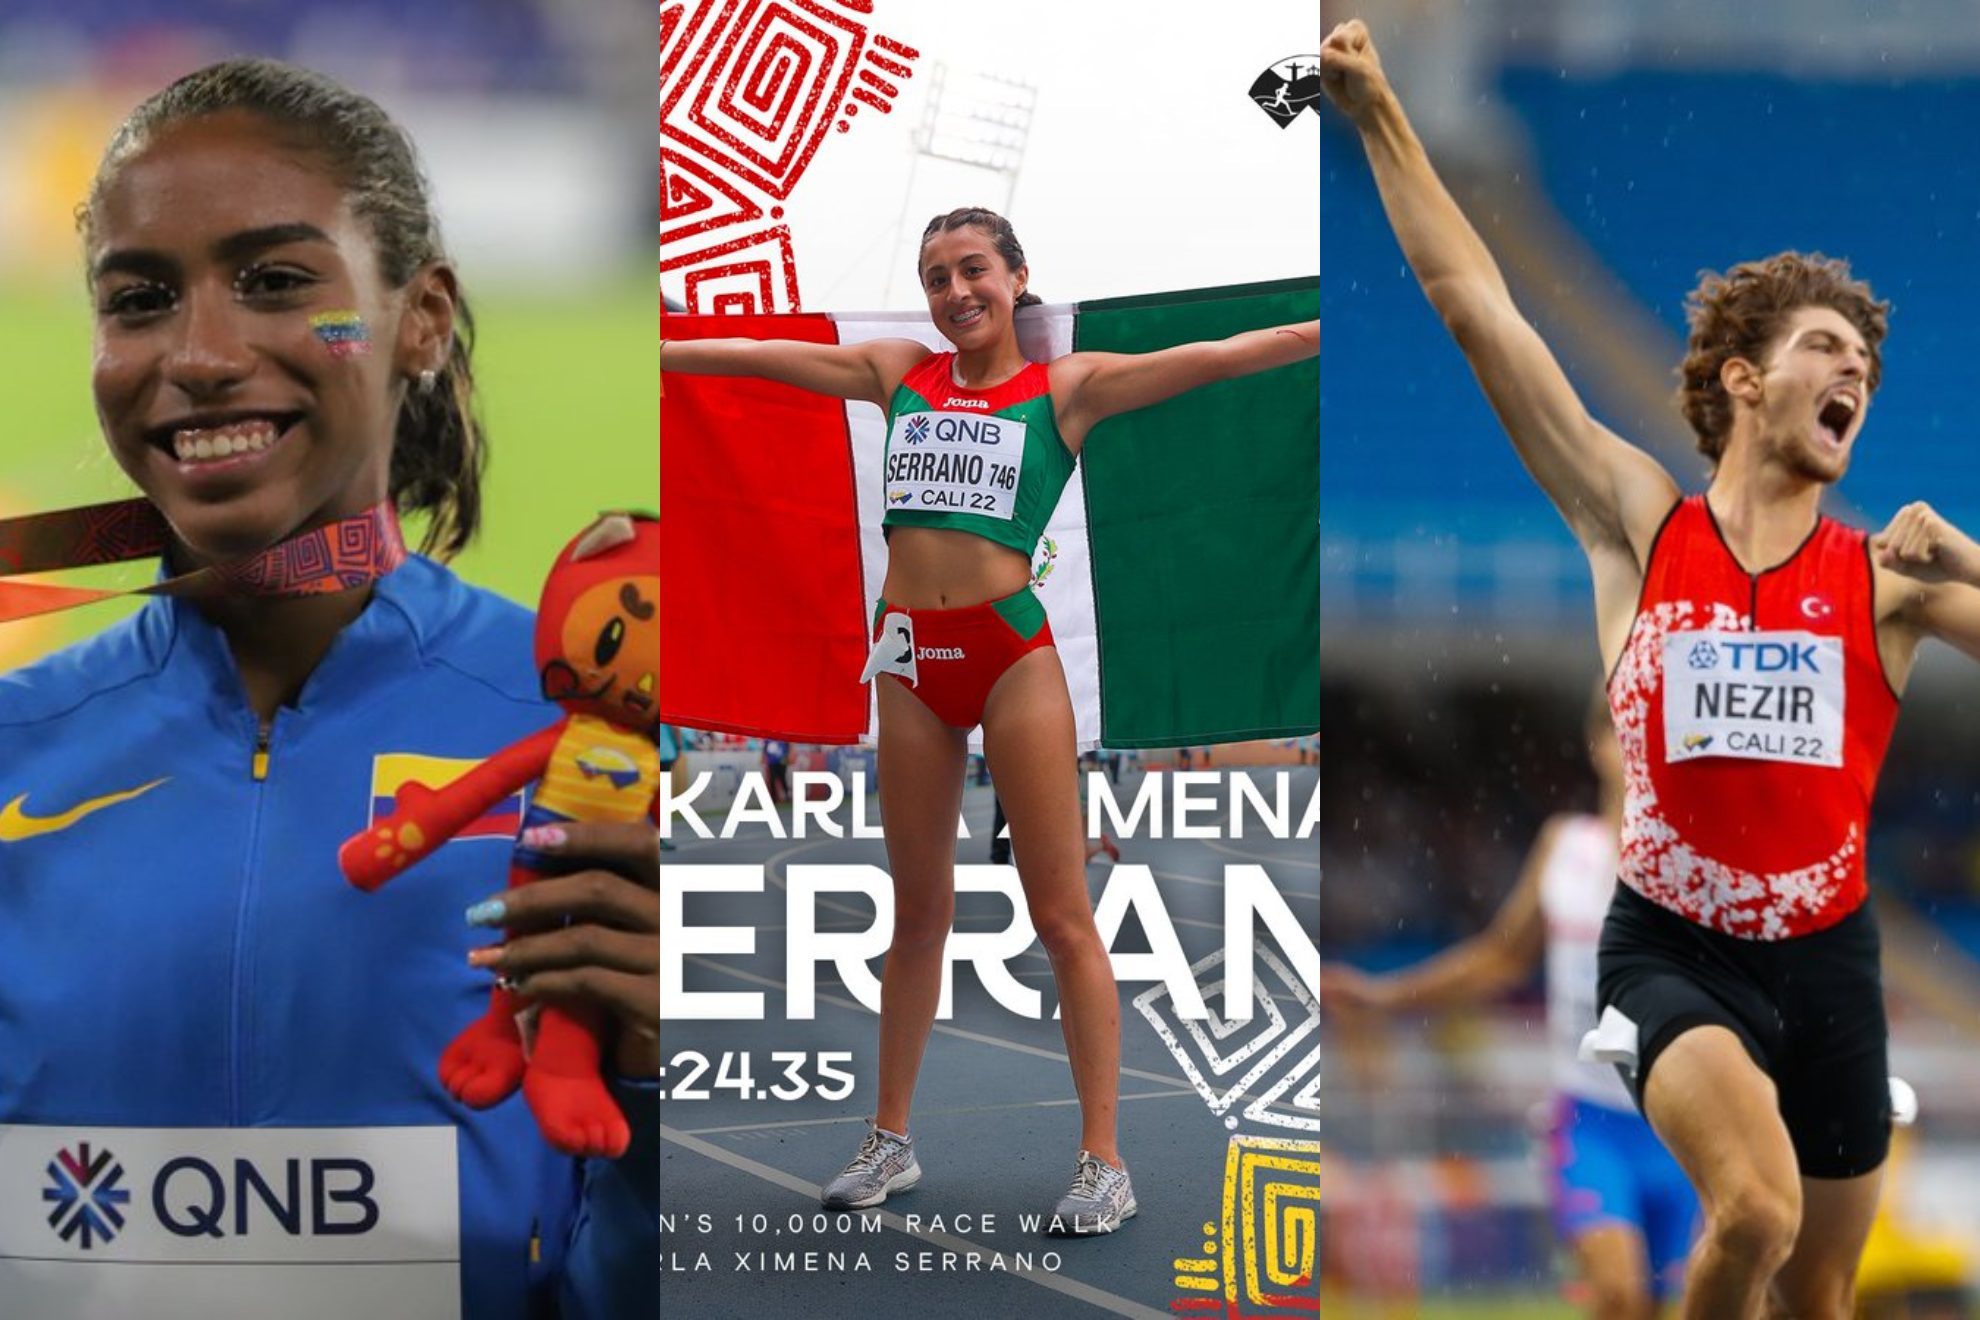 Mundial de Atletismo sub 20 2022: Resumen y resultado de las finales en Cali: Día 5 | @WorldAthletics